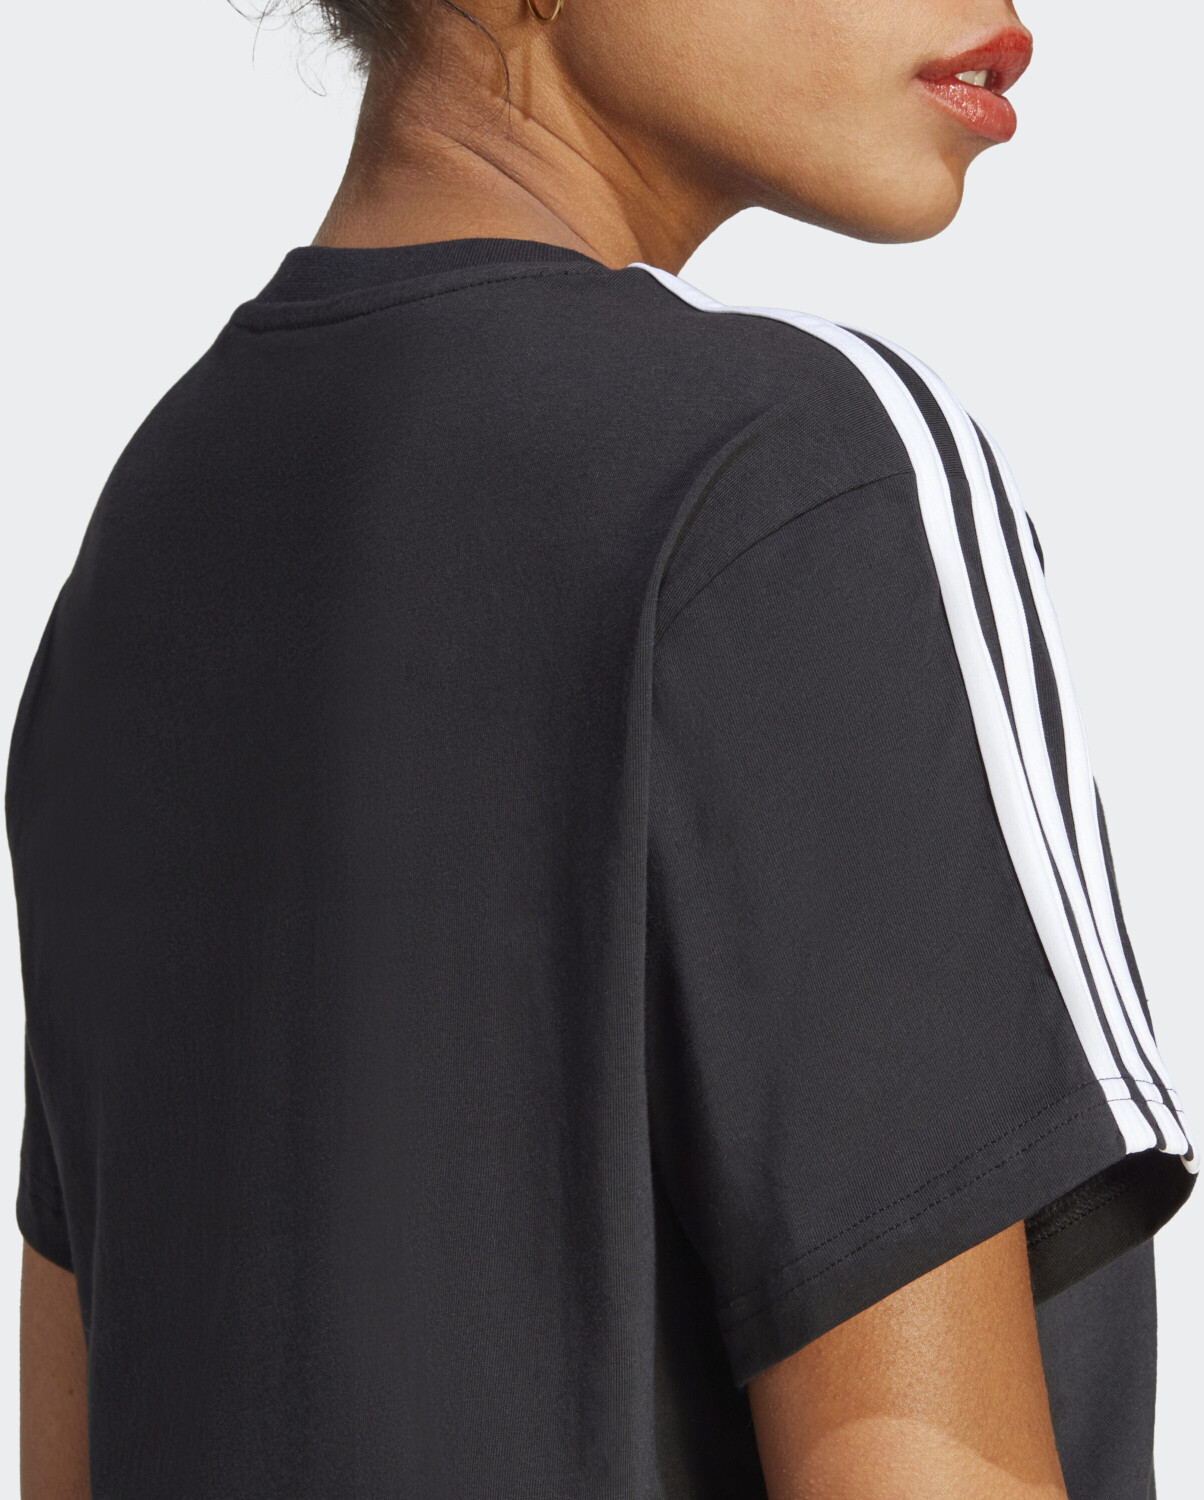 Adidas Essentials / bei Preisvergleich 17,60 ab 3-Streifen € Jersey Single white Crop-Top | (HR4913) black